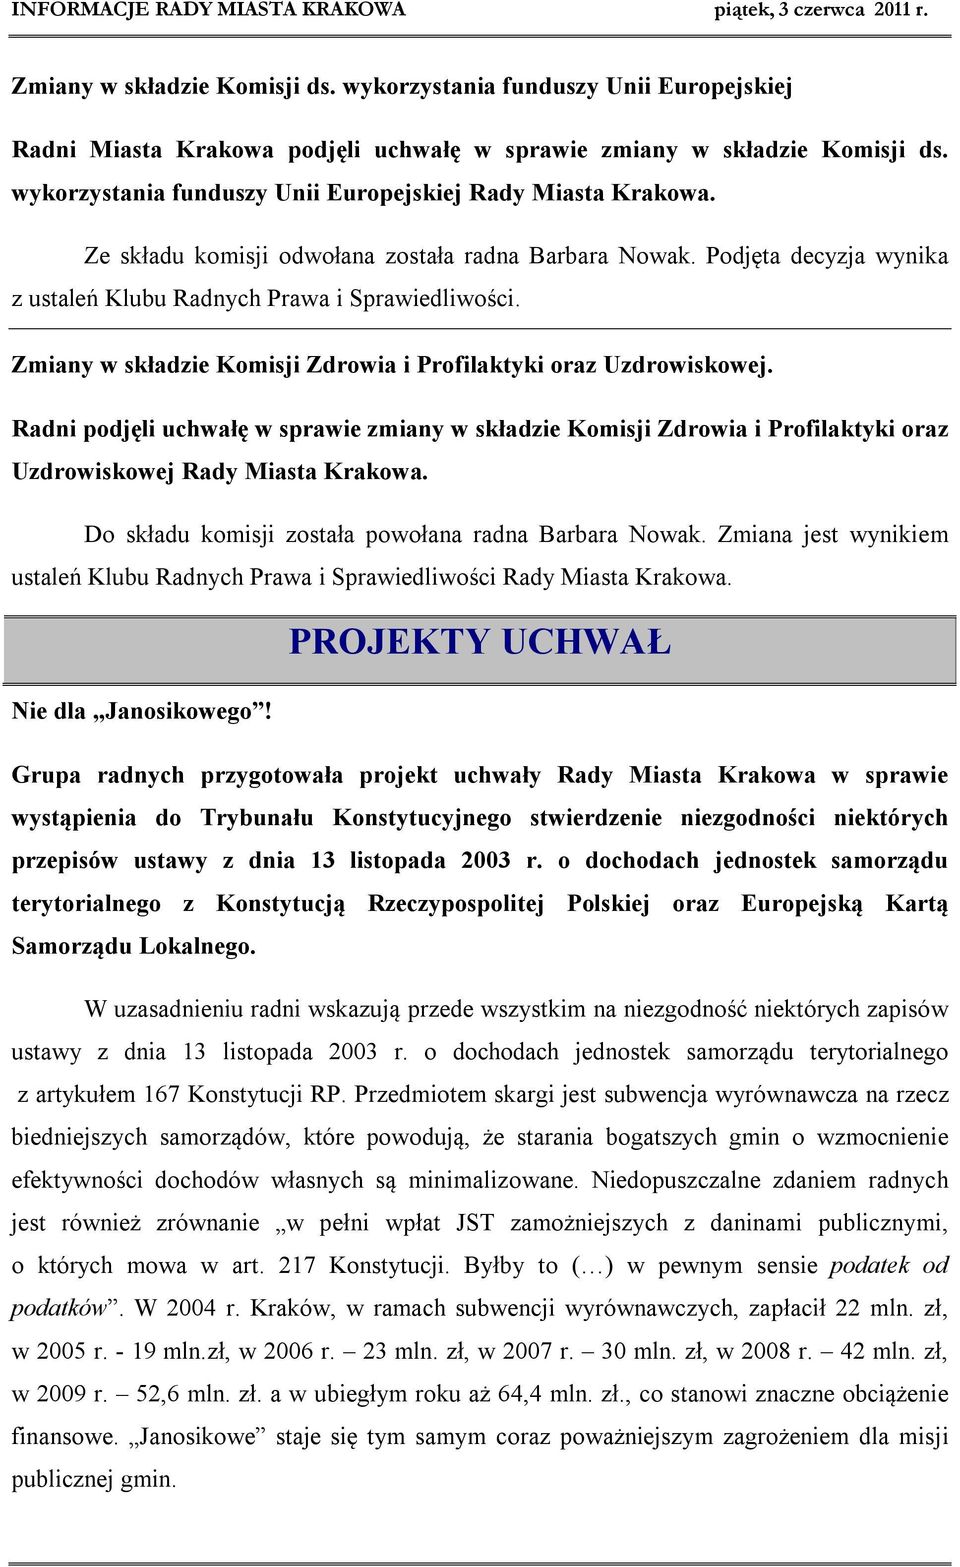 Zmiany w składzie Komisji Zdrowia i Profilaktyki oraz Uzdrowiskowej. Radni podjęli uchwałę w sprawie zmiany w składzie Komisji Zdrowia i Profilaktyki oraz Uzdrowiskowej Rady Miasta Krakowa.